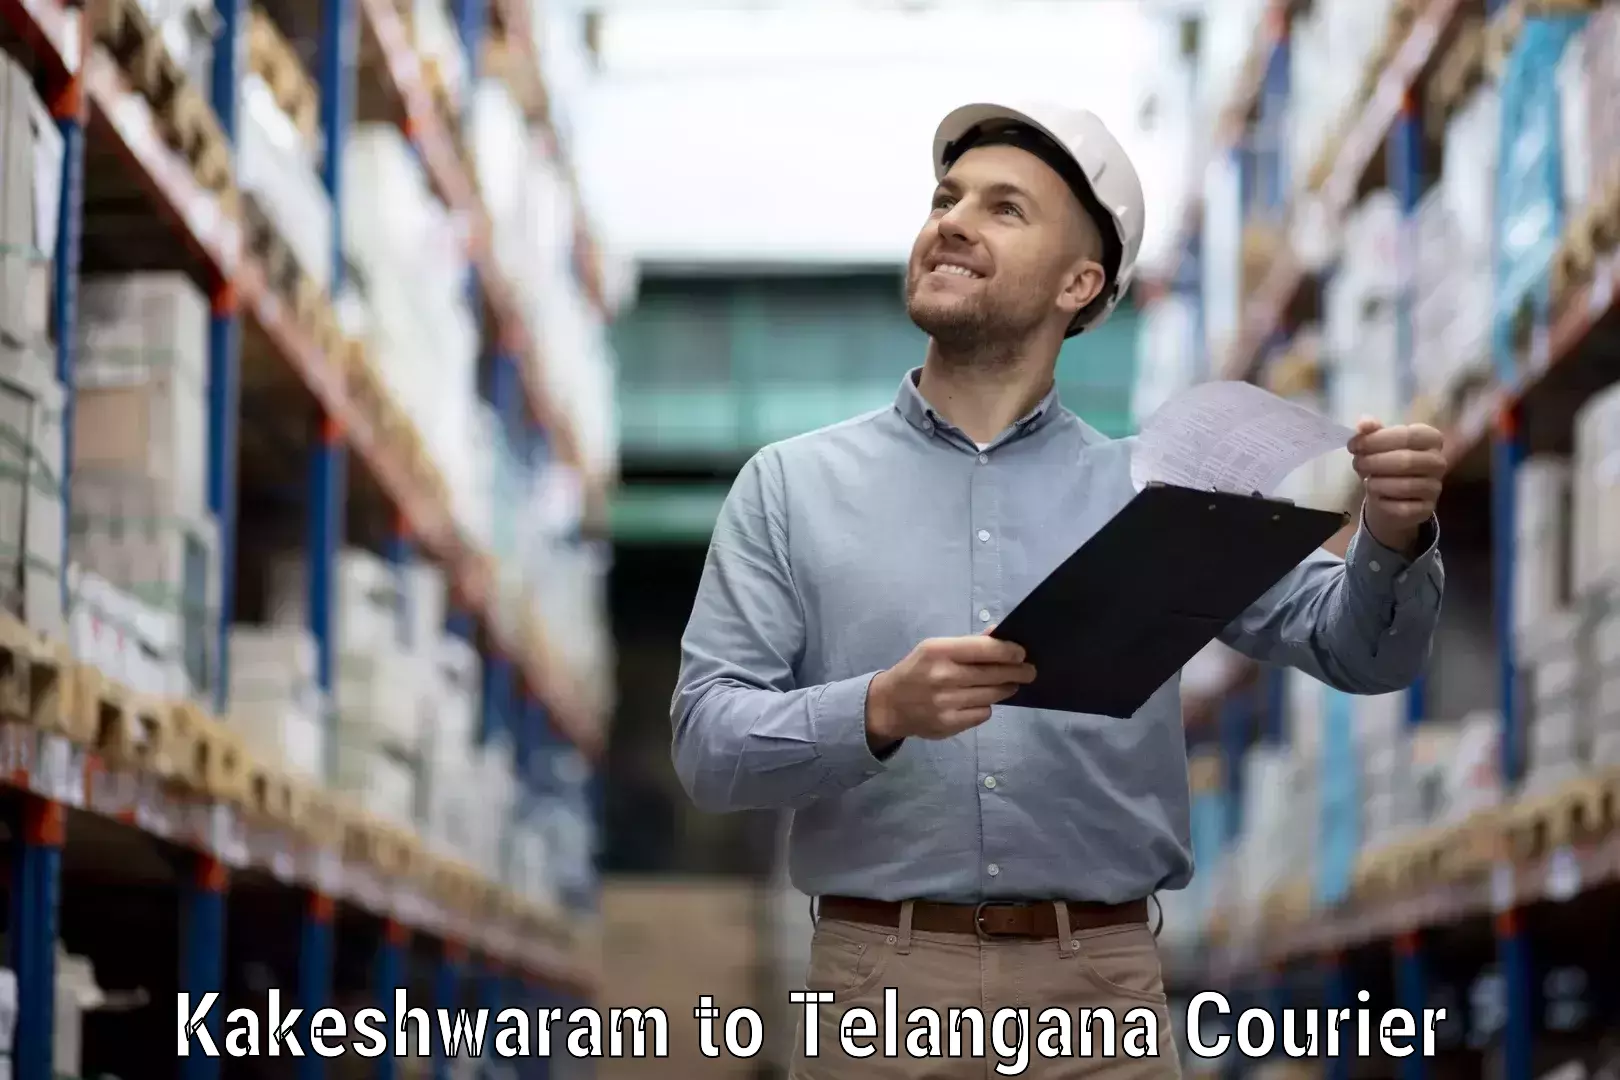 Smart courier technologies Kakeshwaram to Chegunta